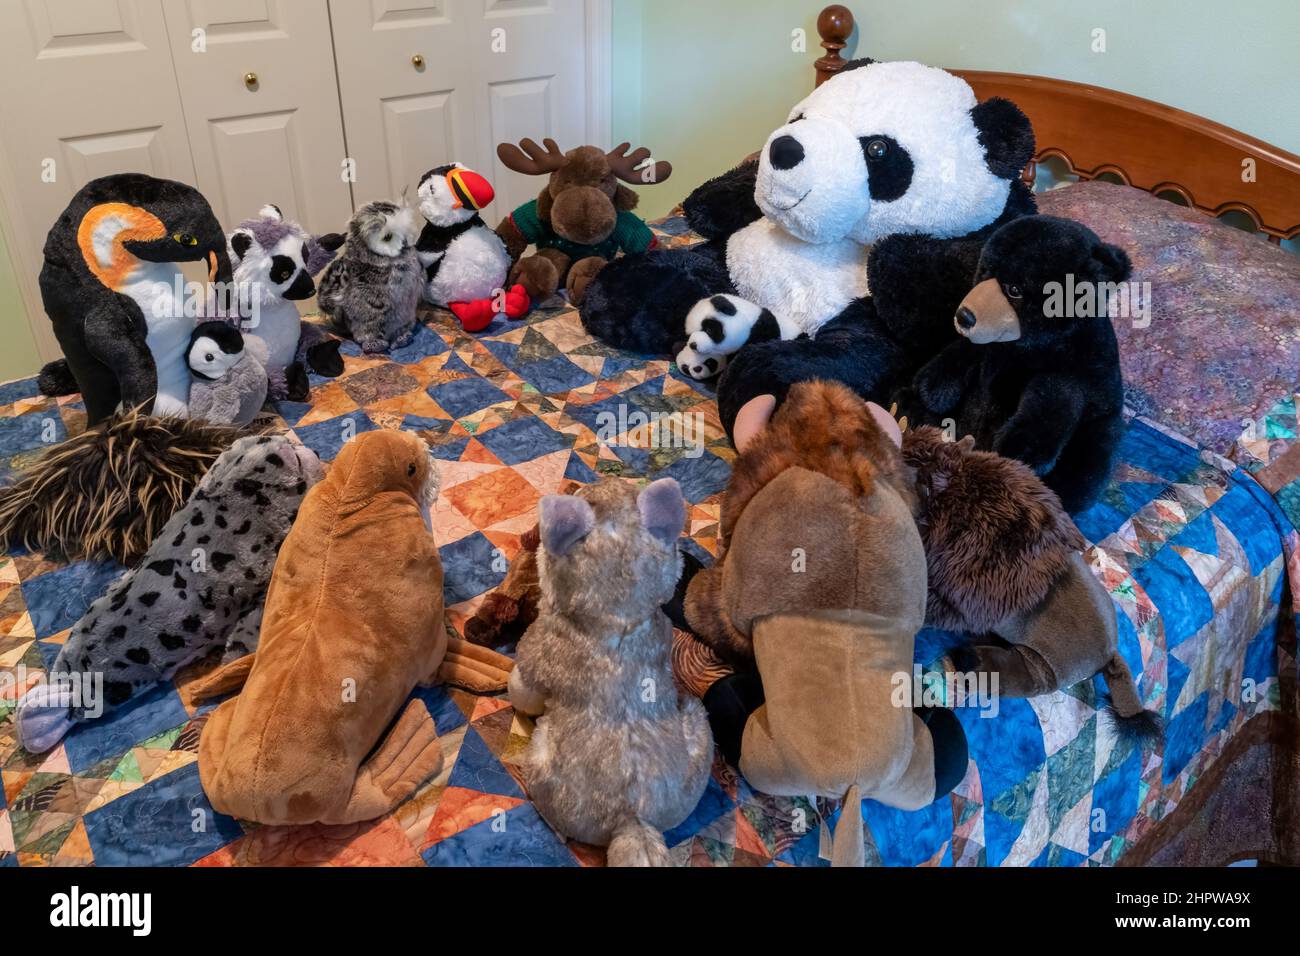 Des animaux en peluche se sont rassemblés pour raconter des histoires sur un lit. Banque D'Images